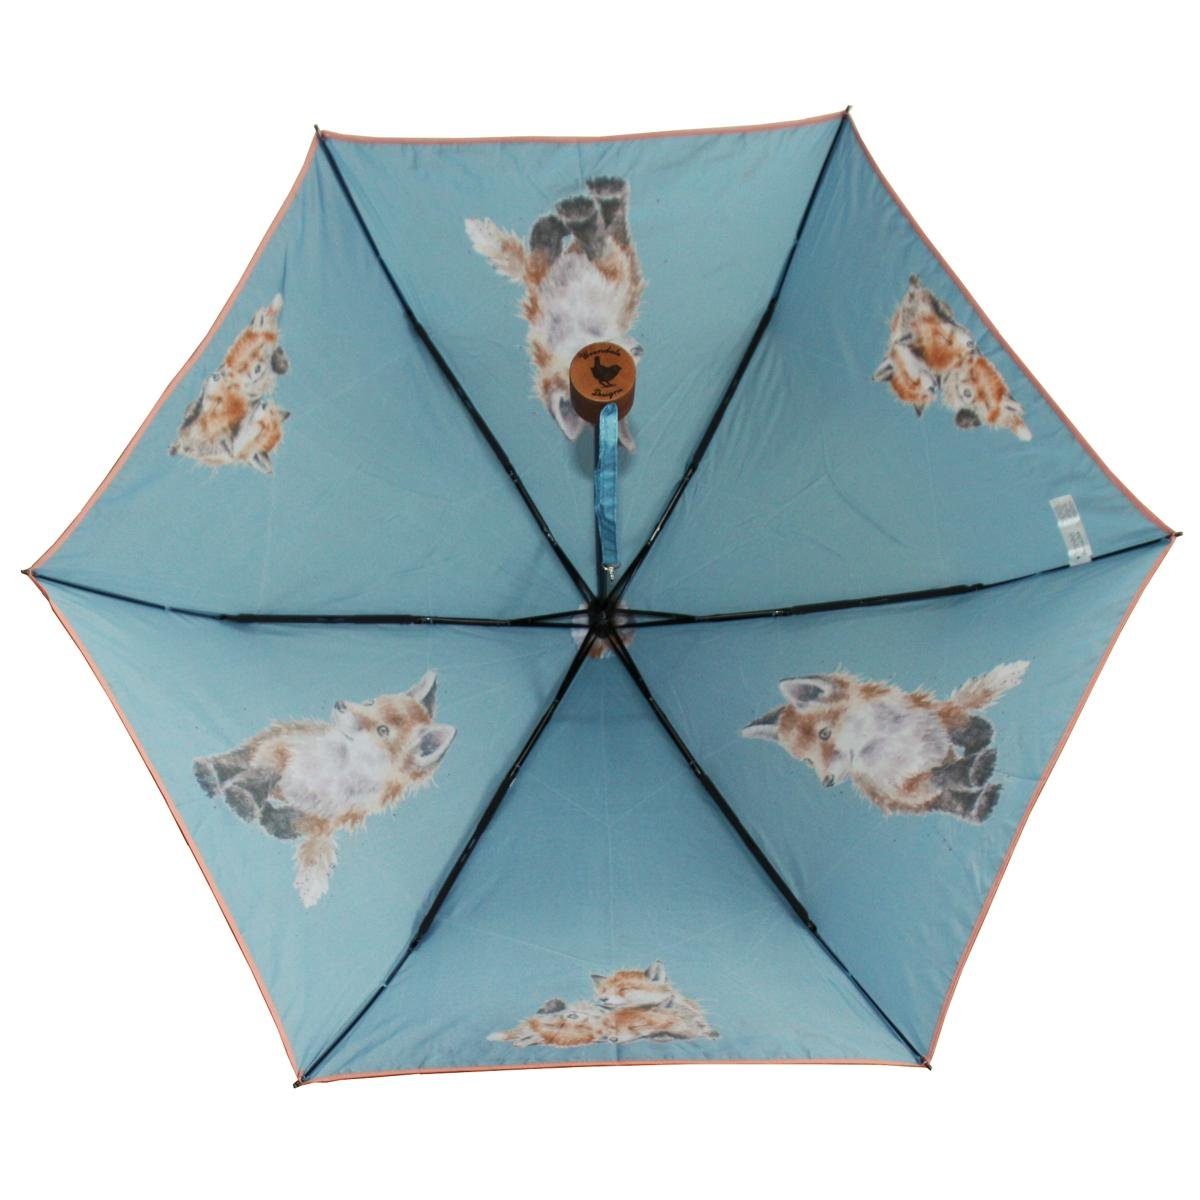 Wrendale Taschenregenschirm Wrendale Designs Taschen-Regenschirm to Born be Fuchs Wild